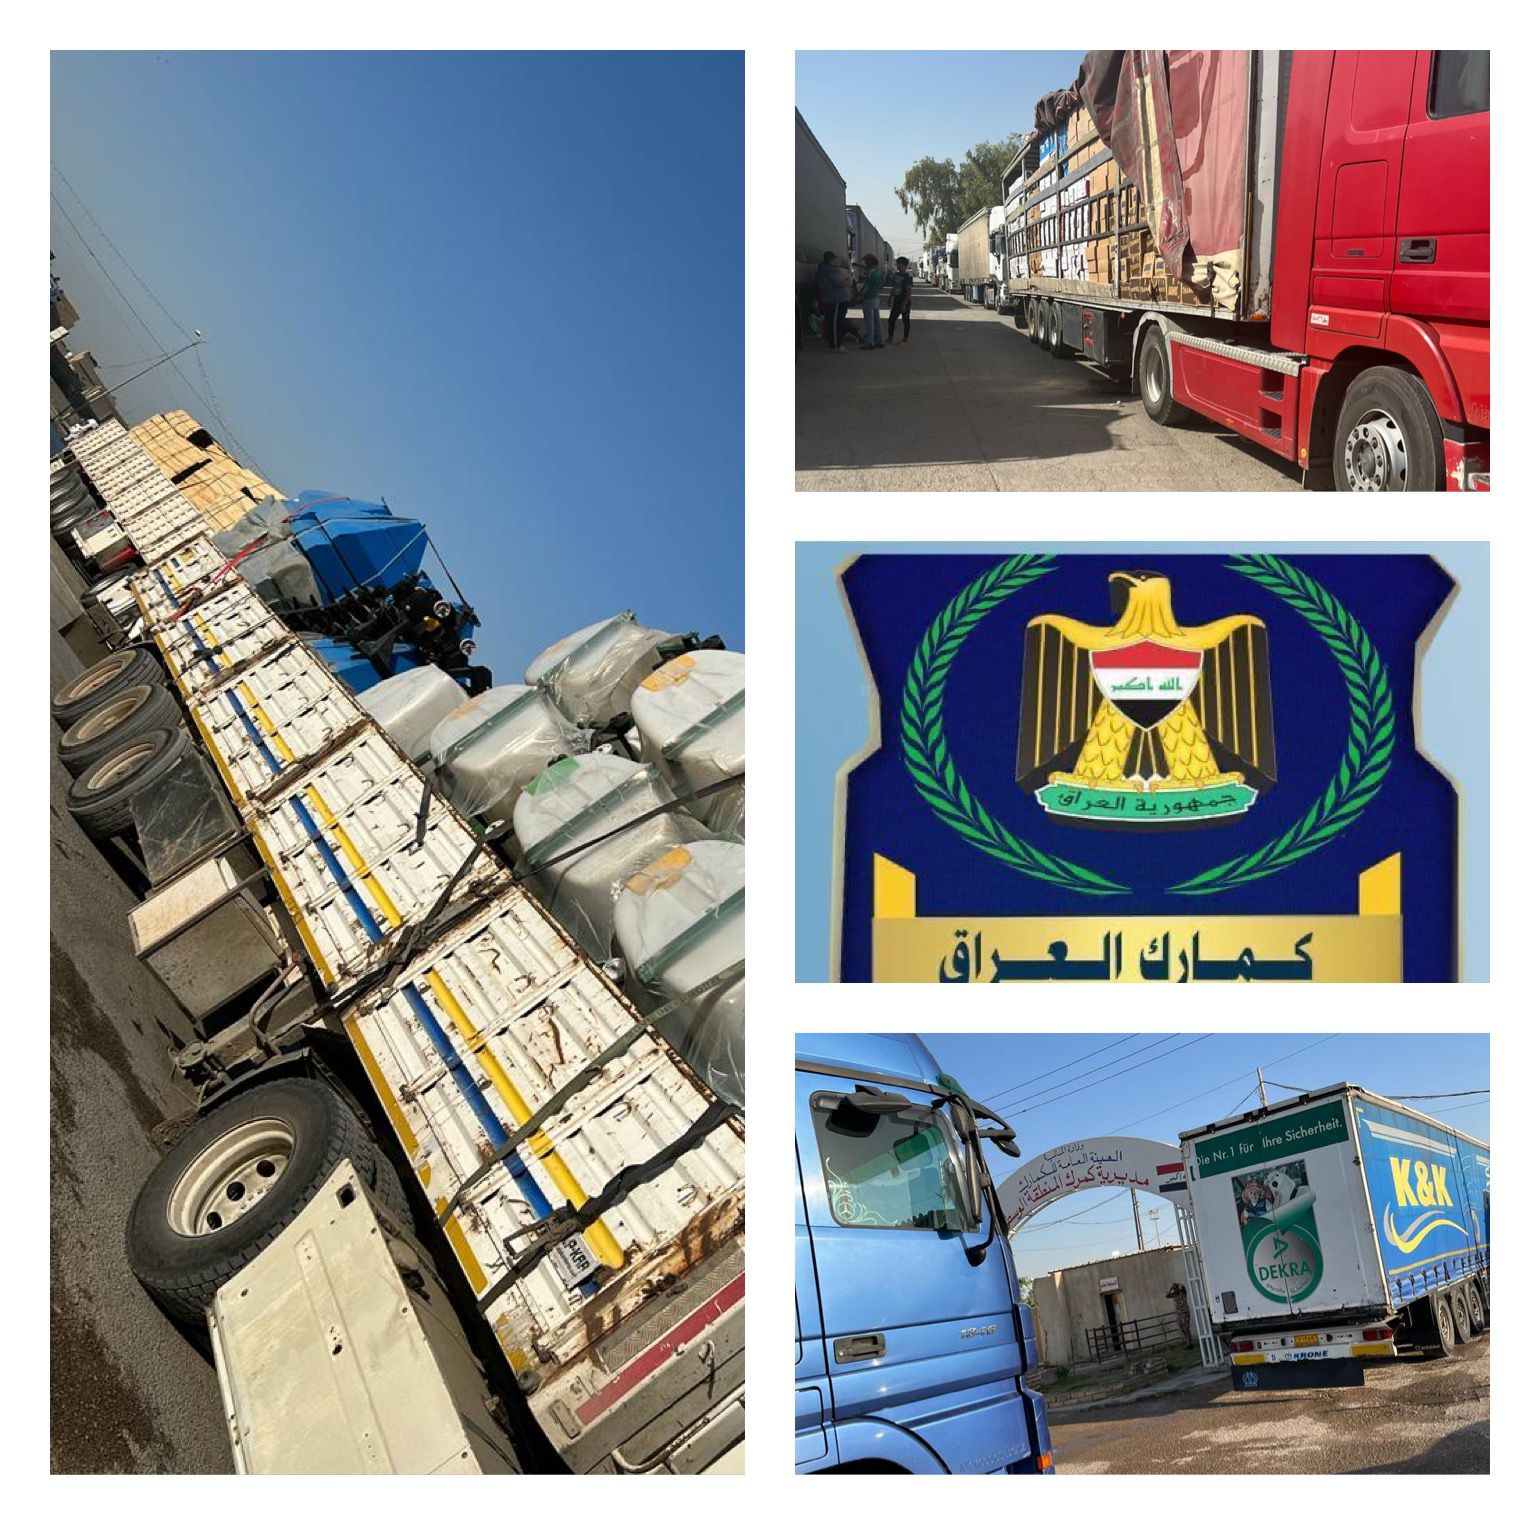 الكمارك ،،، تحريات مديرية كمرك المنطقة الوسطى تضبط ( ٣٣ ) شاحنة مخالفة عند مداخل محافظة بغداد